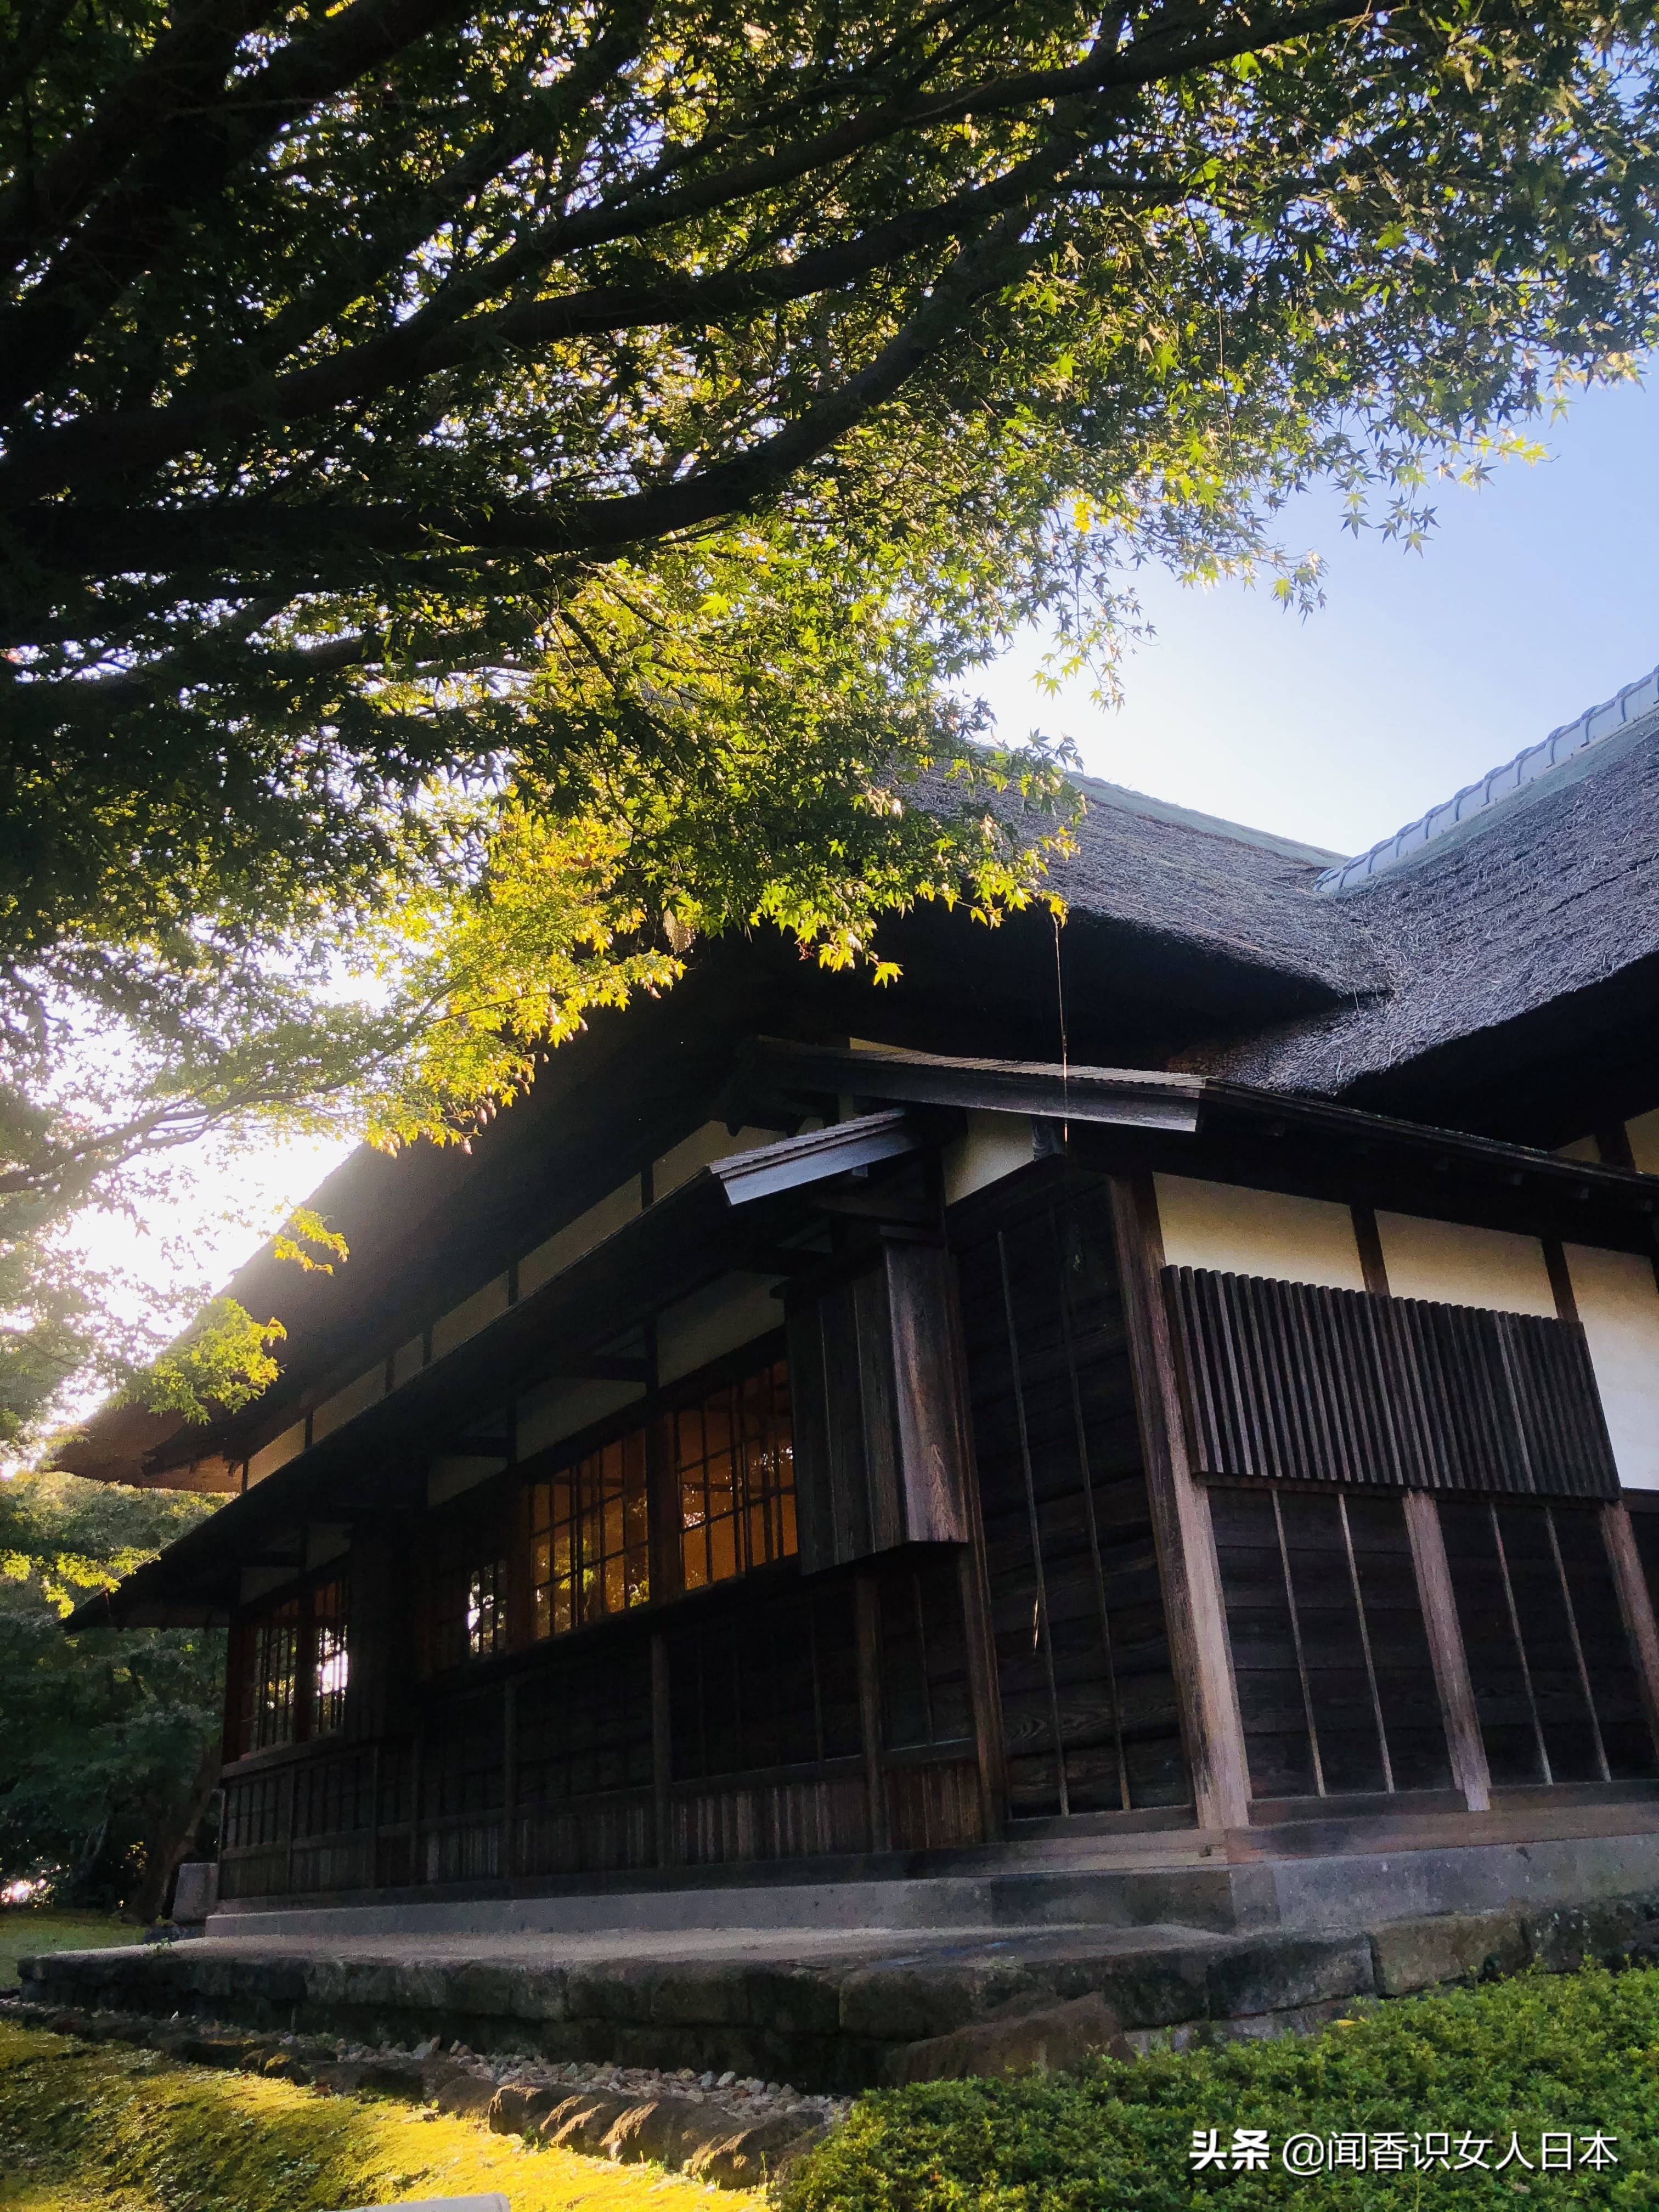 橫濱三溪園一代實業家打造的日式庭園 17座建築來自京都和鎌倉 中國熱點